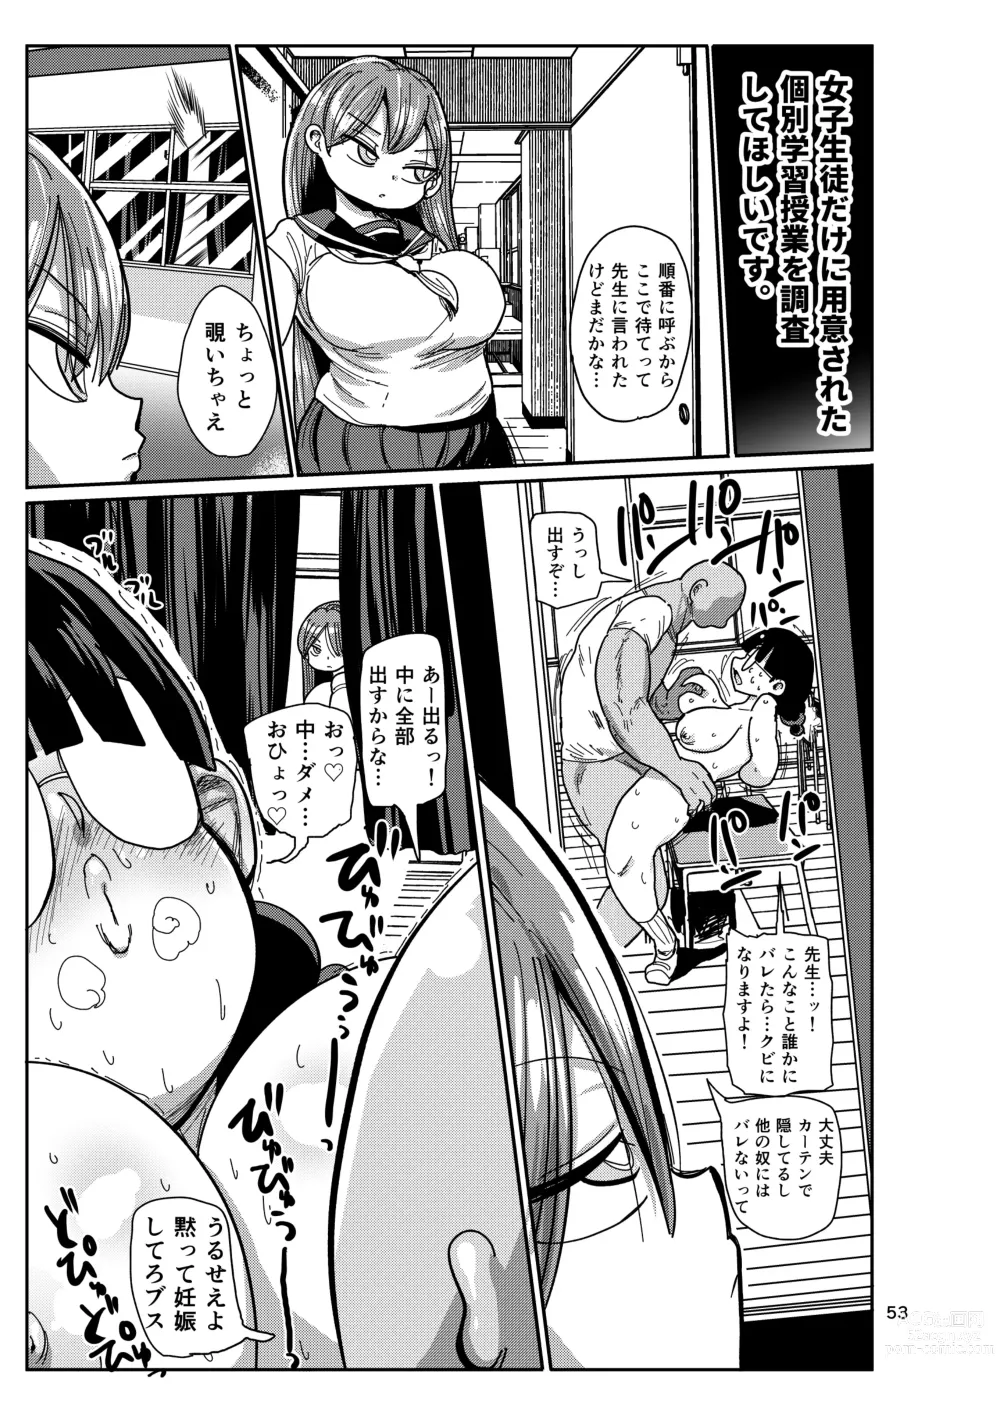 Page 52 of doujinshi Ima made no kaijou gentei hon-tachi matome